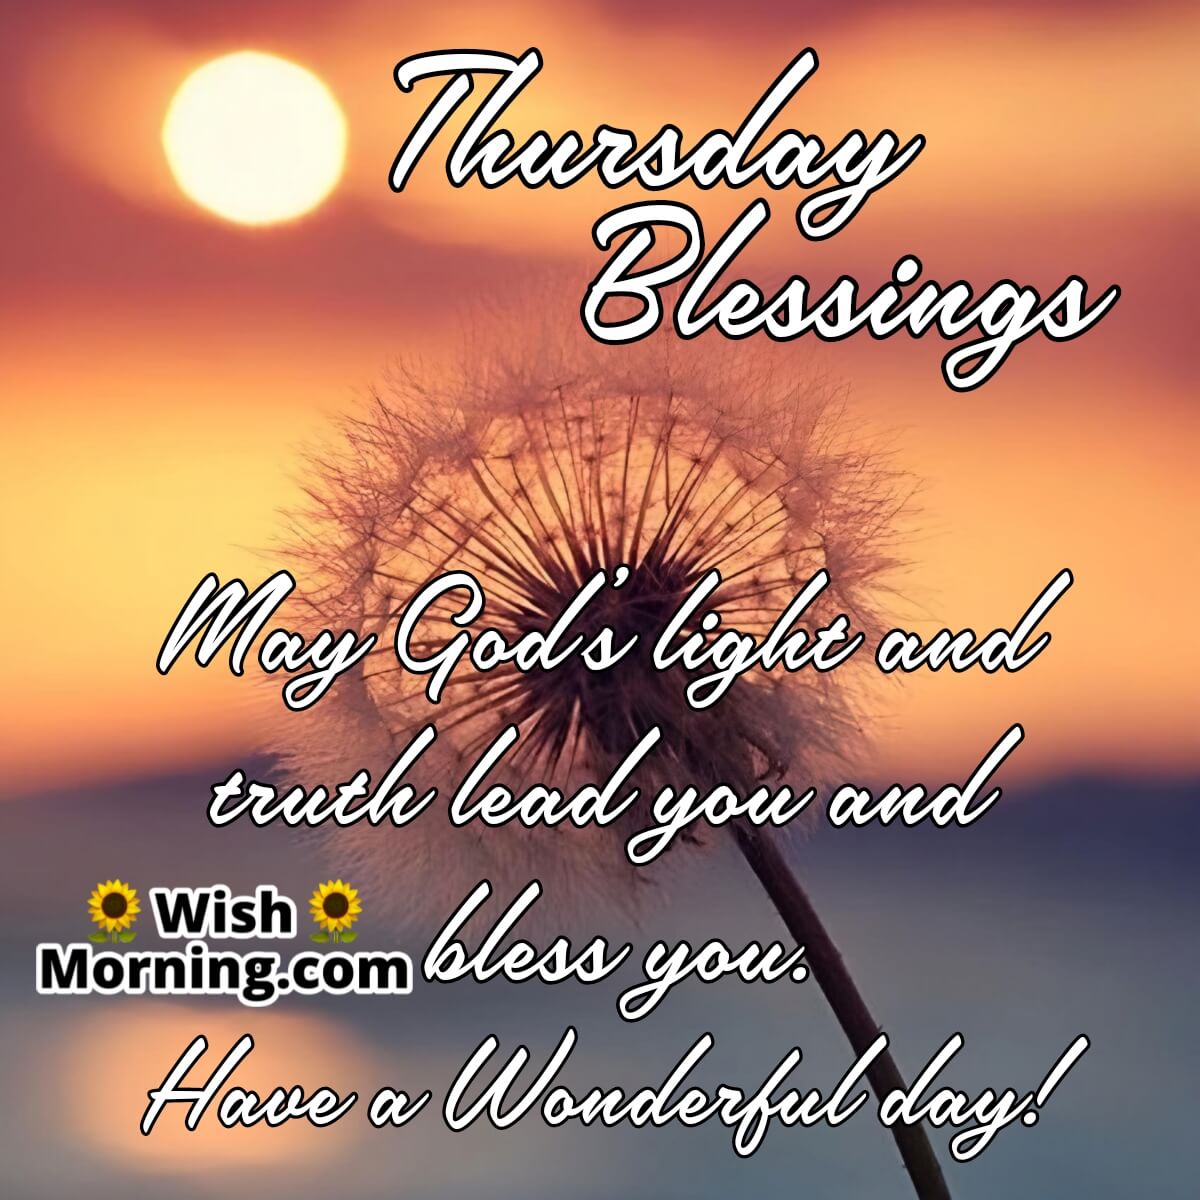 Thursday Blessings Wonderful Day